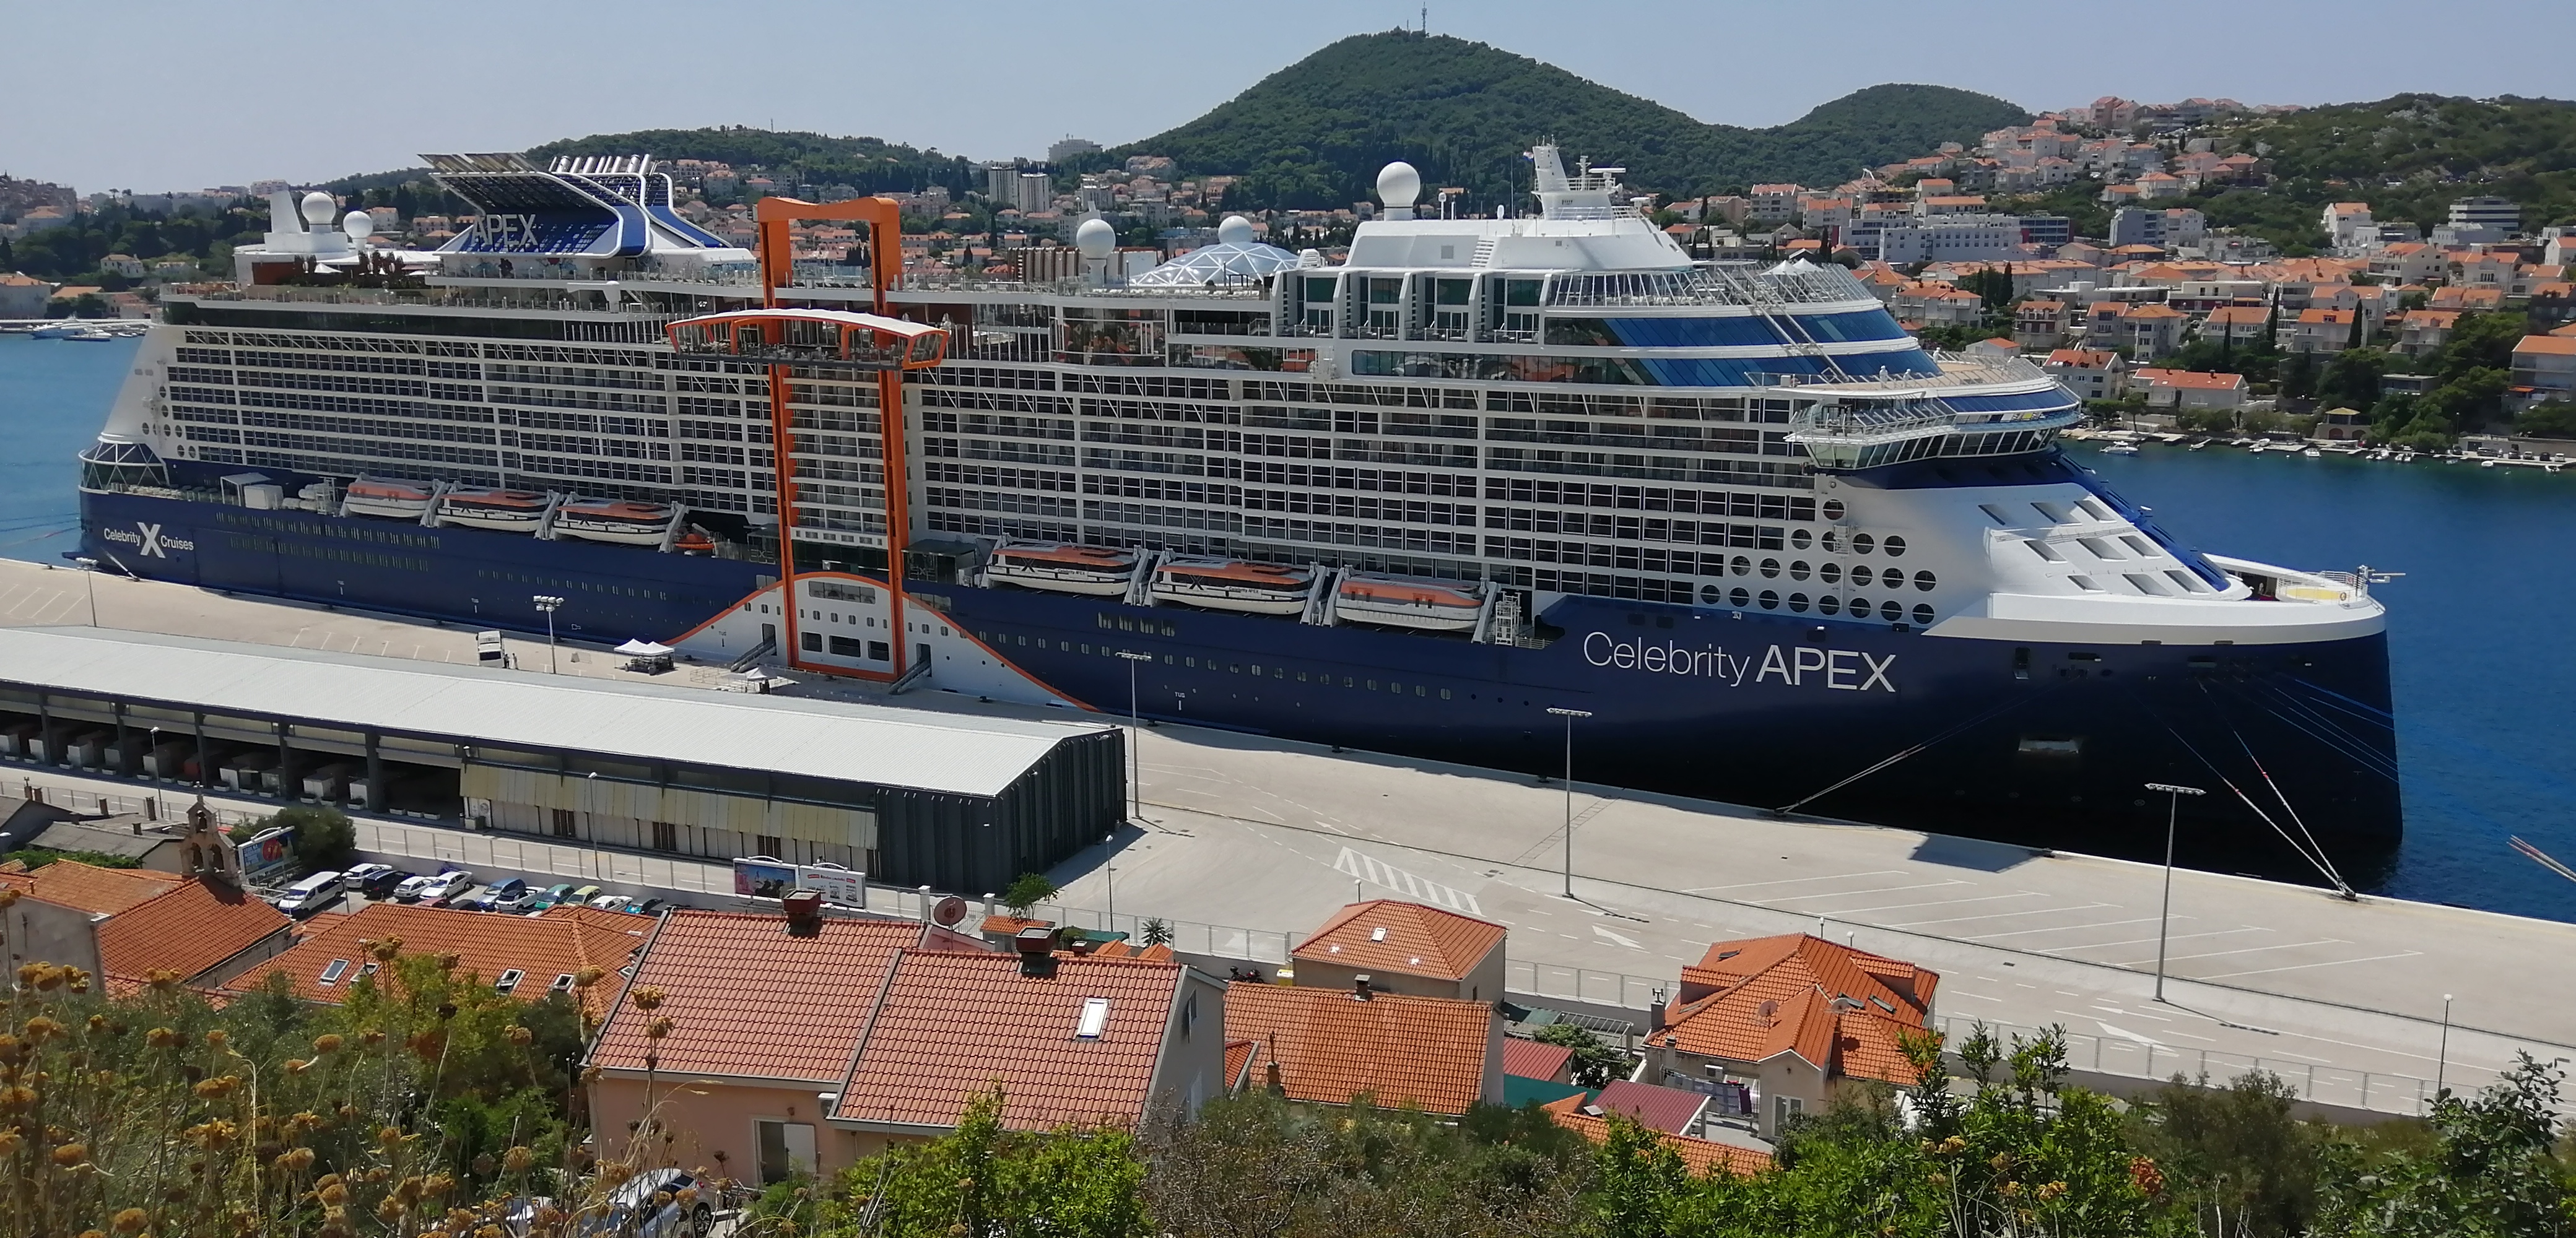 Celebrity Apex in Dubrovnik new port